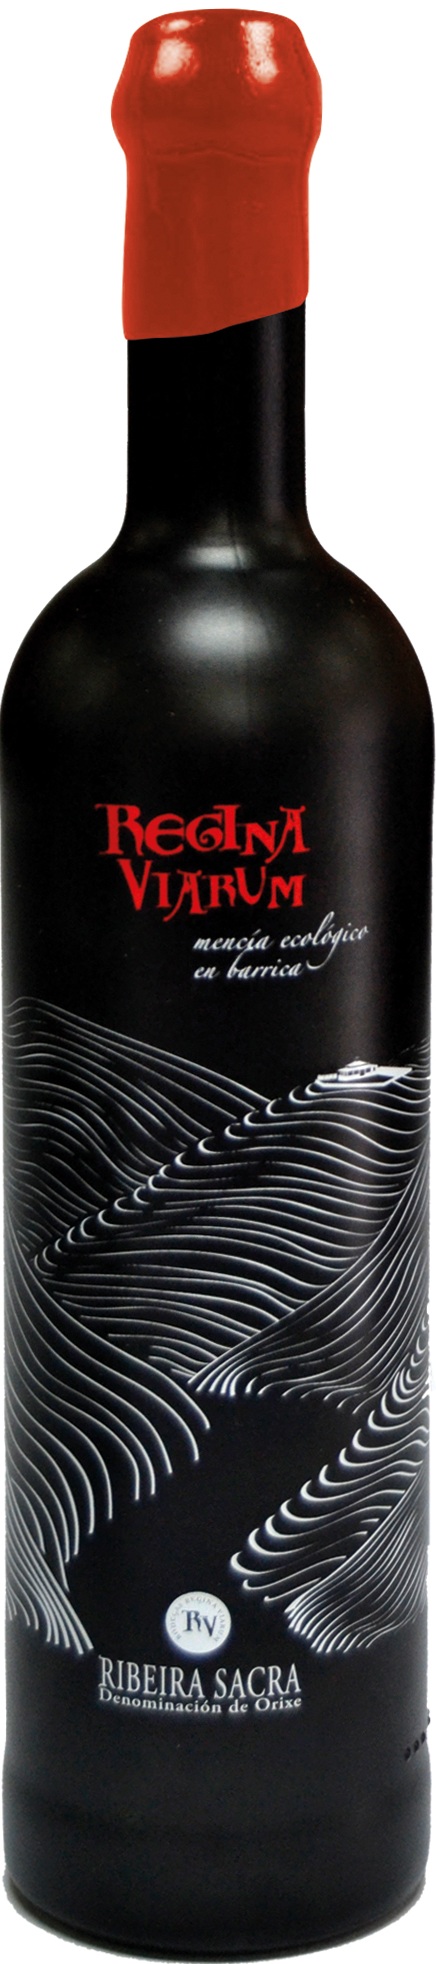 Imagen de la botella de Vino Regina Viarum Mencía Ecológico en barrica